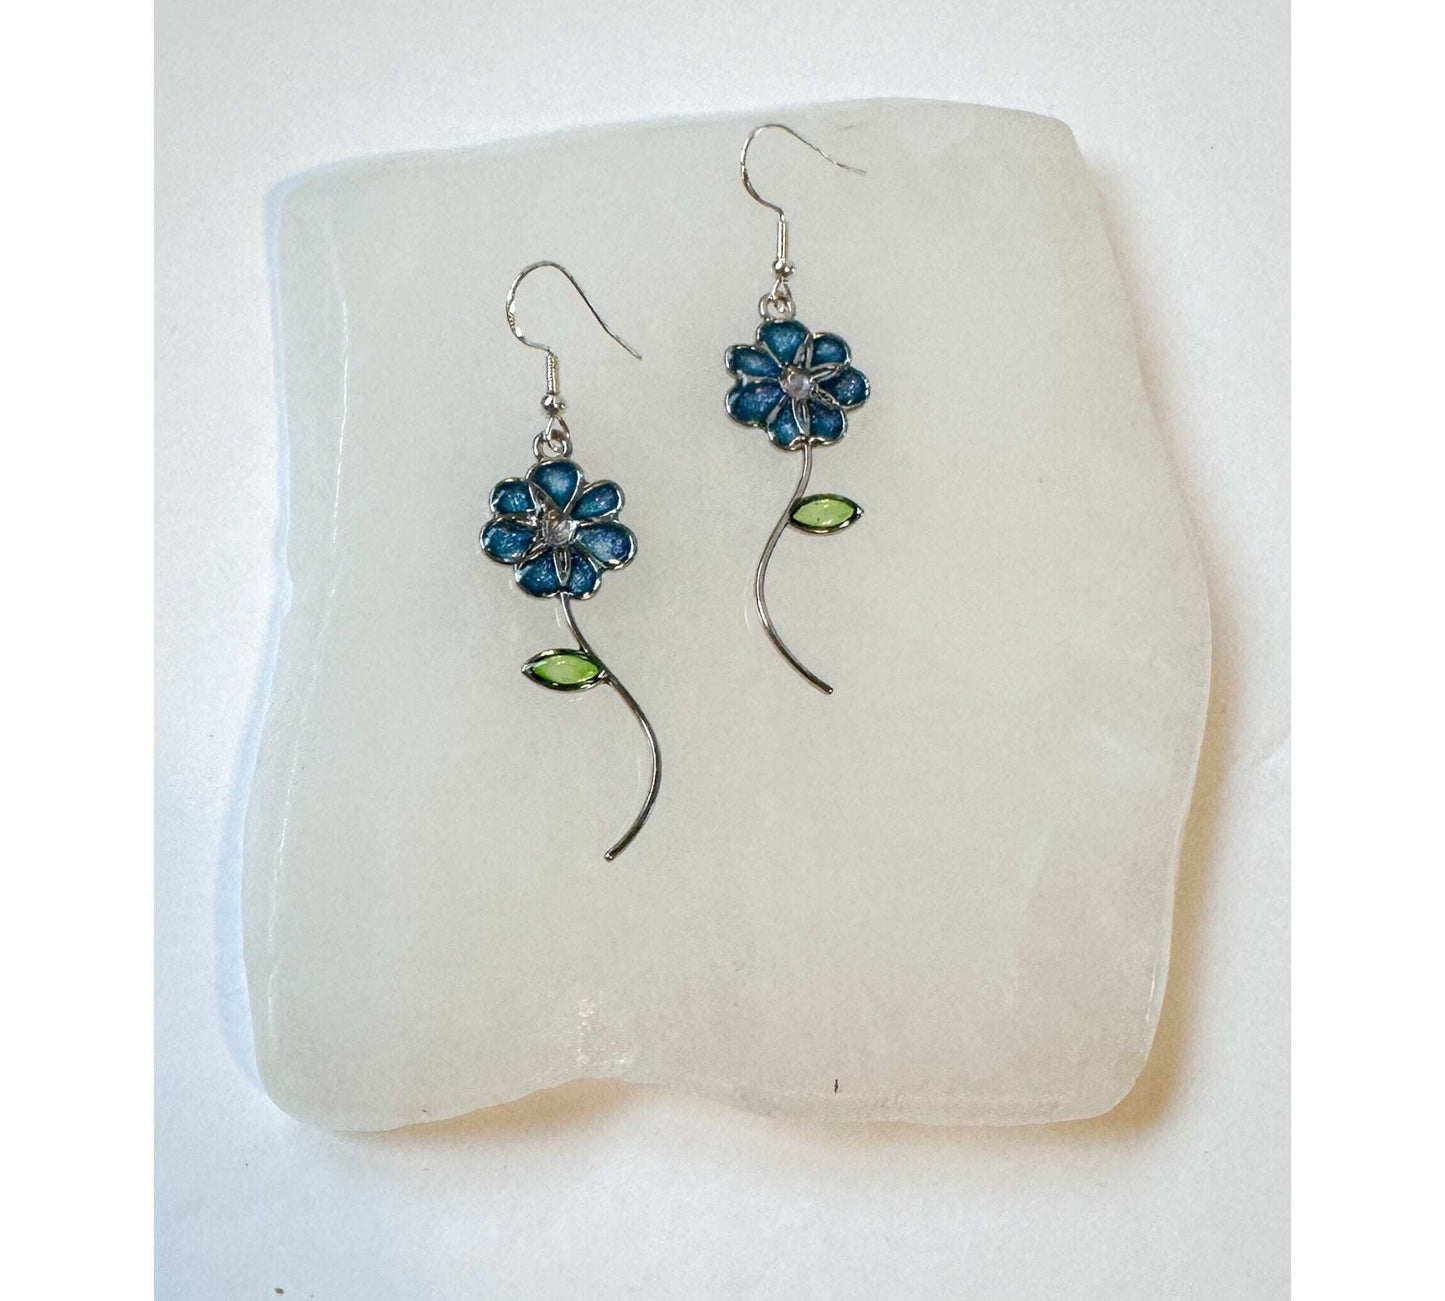 Handmade Quartz Blossom Resin Earrings - Blue Blooms & Nature's Energy